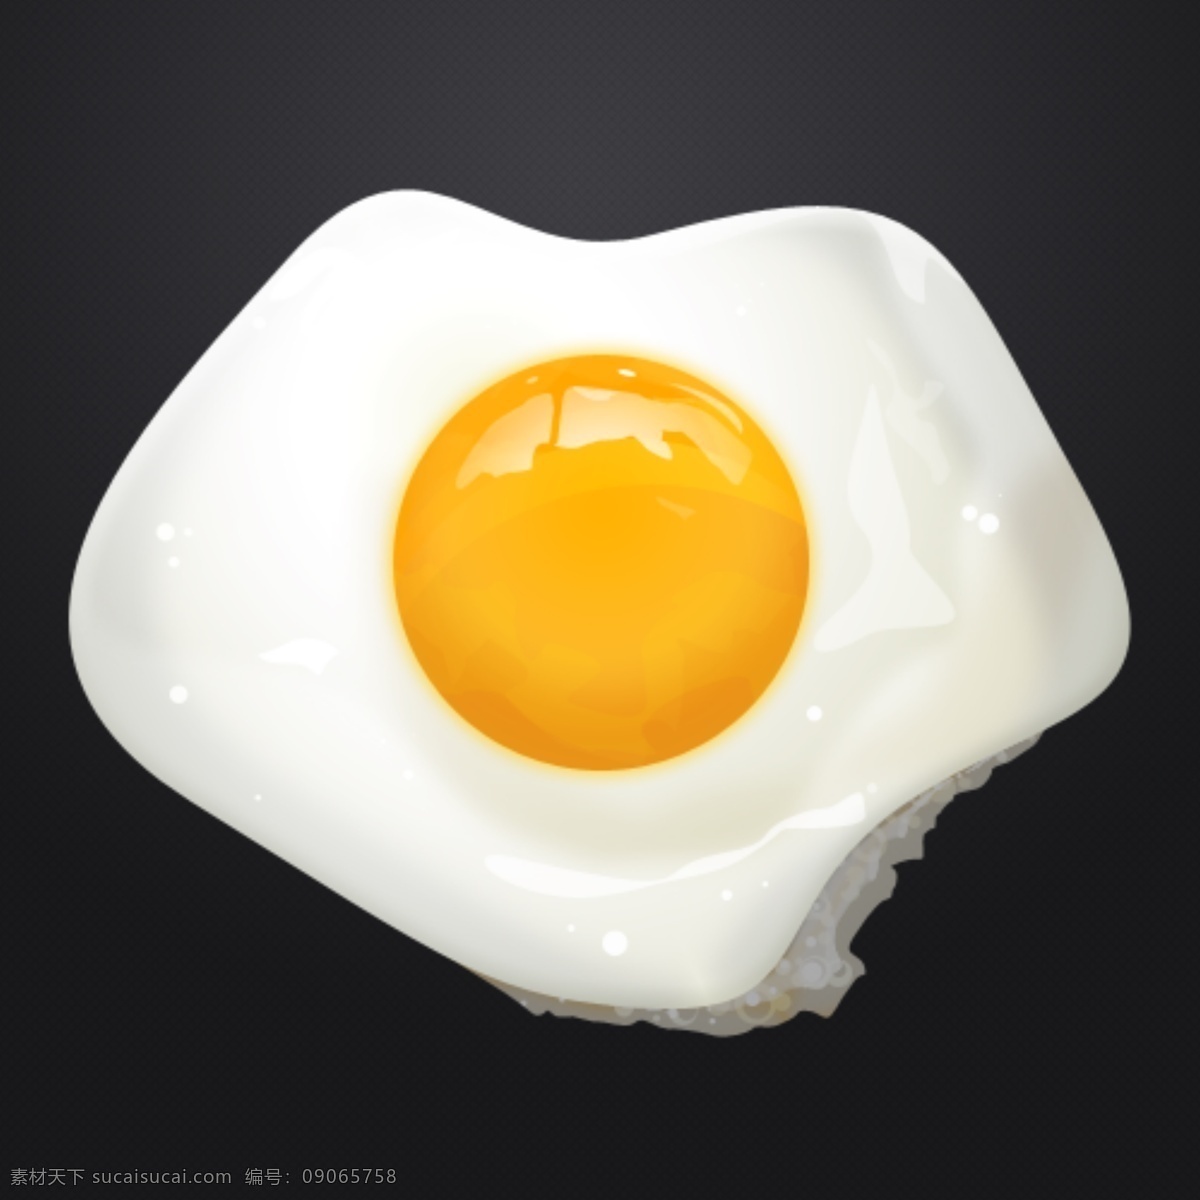 超写实荷包蛋 鸡蛋 蛋清 荷包蛋 鸭蛋 手绘鸡蛋 psd鸡蛋 手绘 ui 蛋黄 透明 透明鸡蛋 透明蛋清 分层 源文件